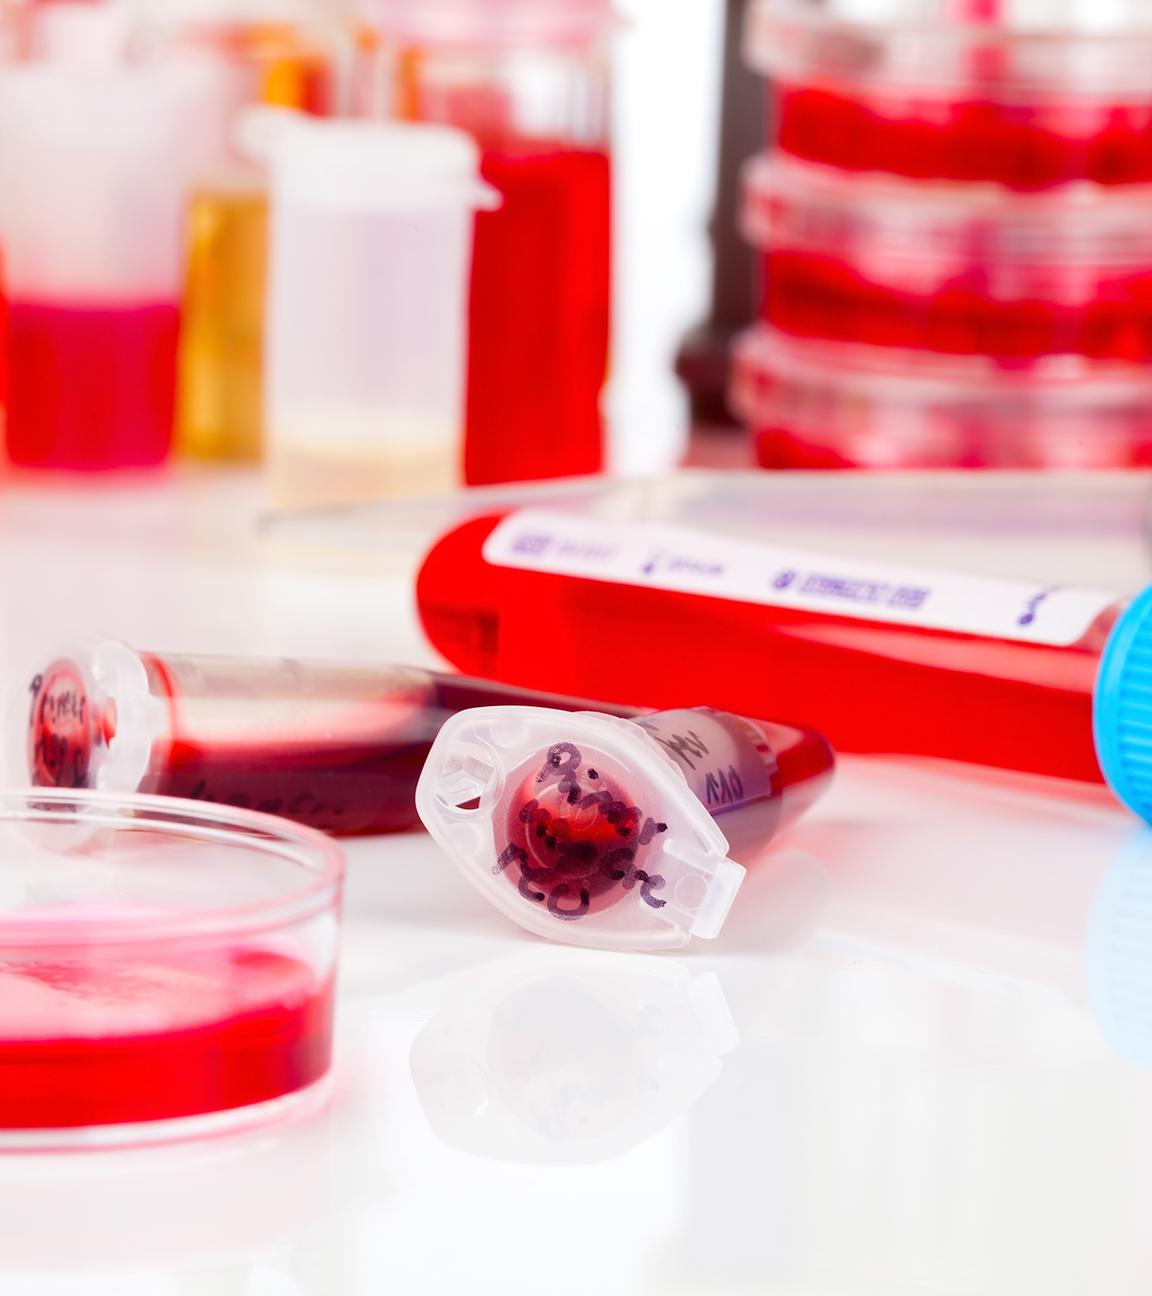 Auf einem Tisch in einem Labor liegen Petrischalen und Probenbehälter, gefüllt mit Blutproben.